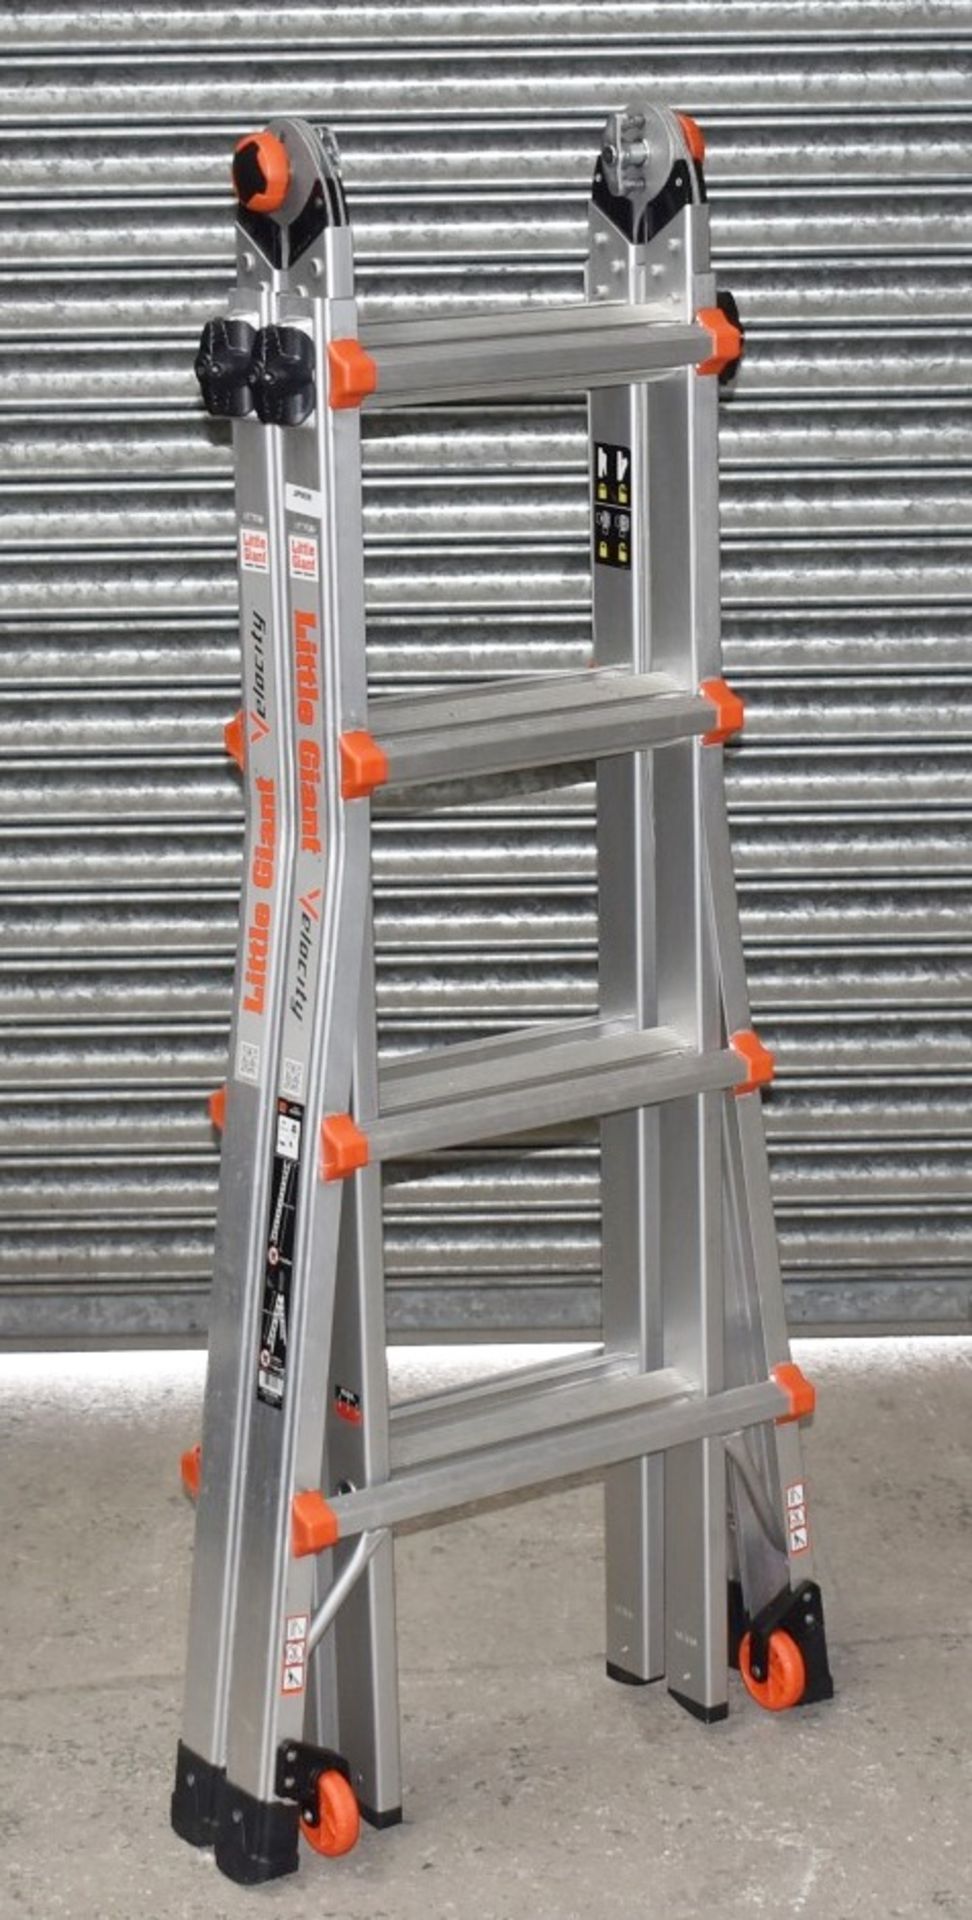 1 x Little Giant 4 Step Multipurpose Velocity Ladder - Type 15417EN - Ref: JP909 GITW - CL732 - - Image 2 of 15